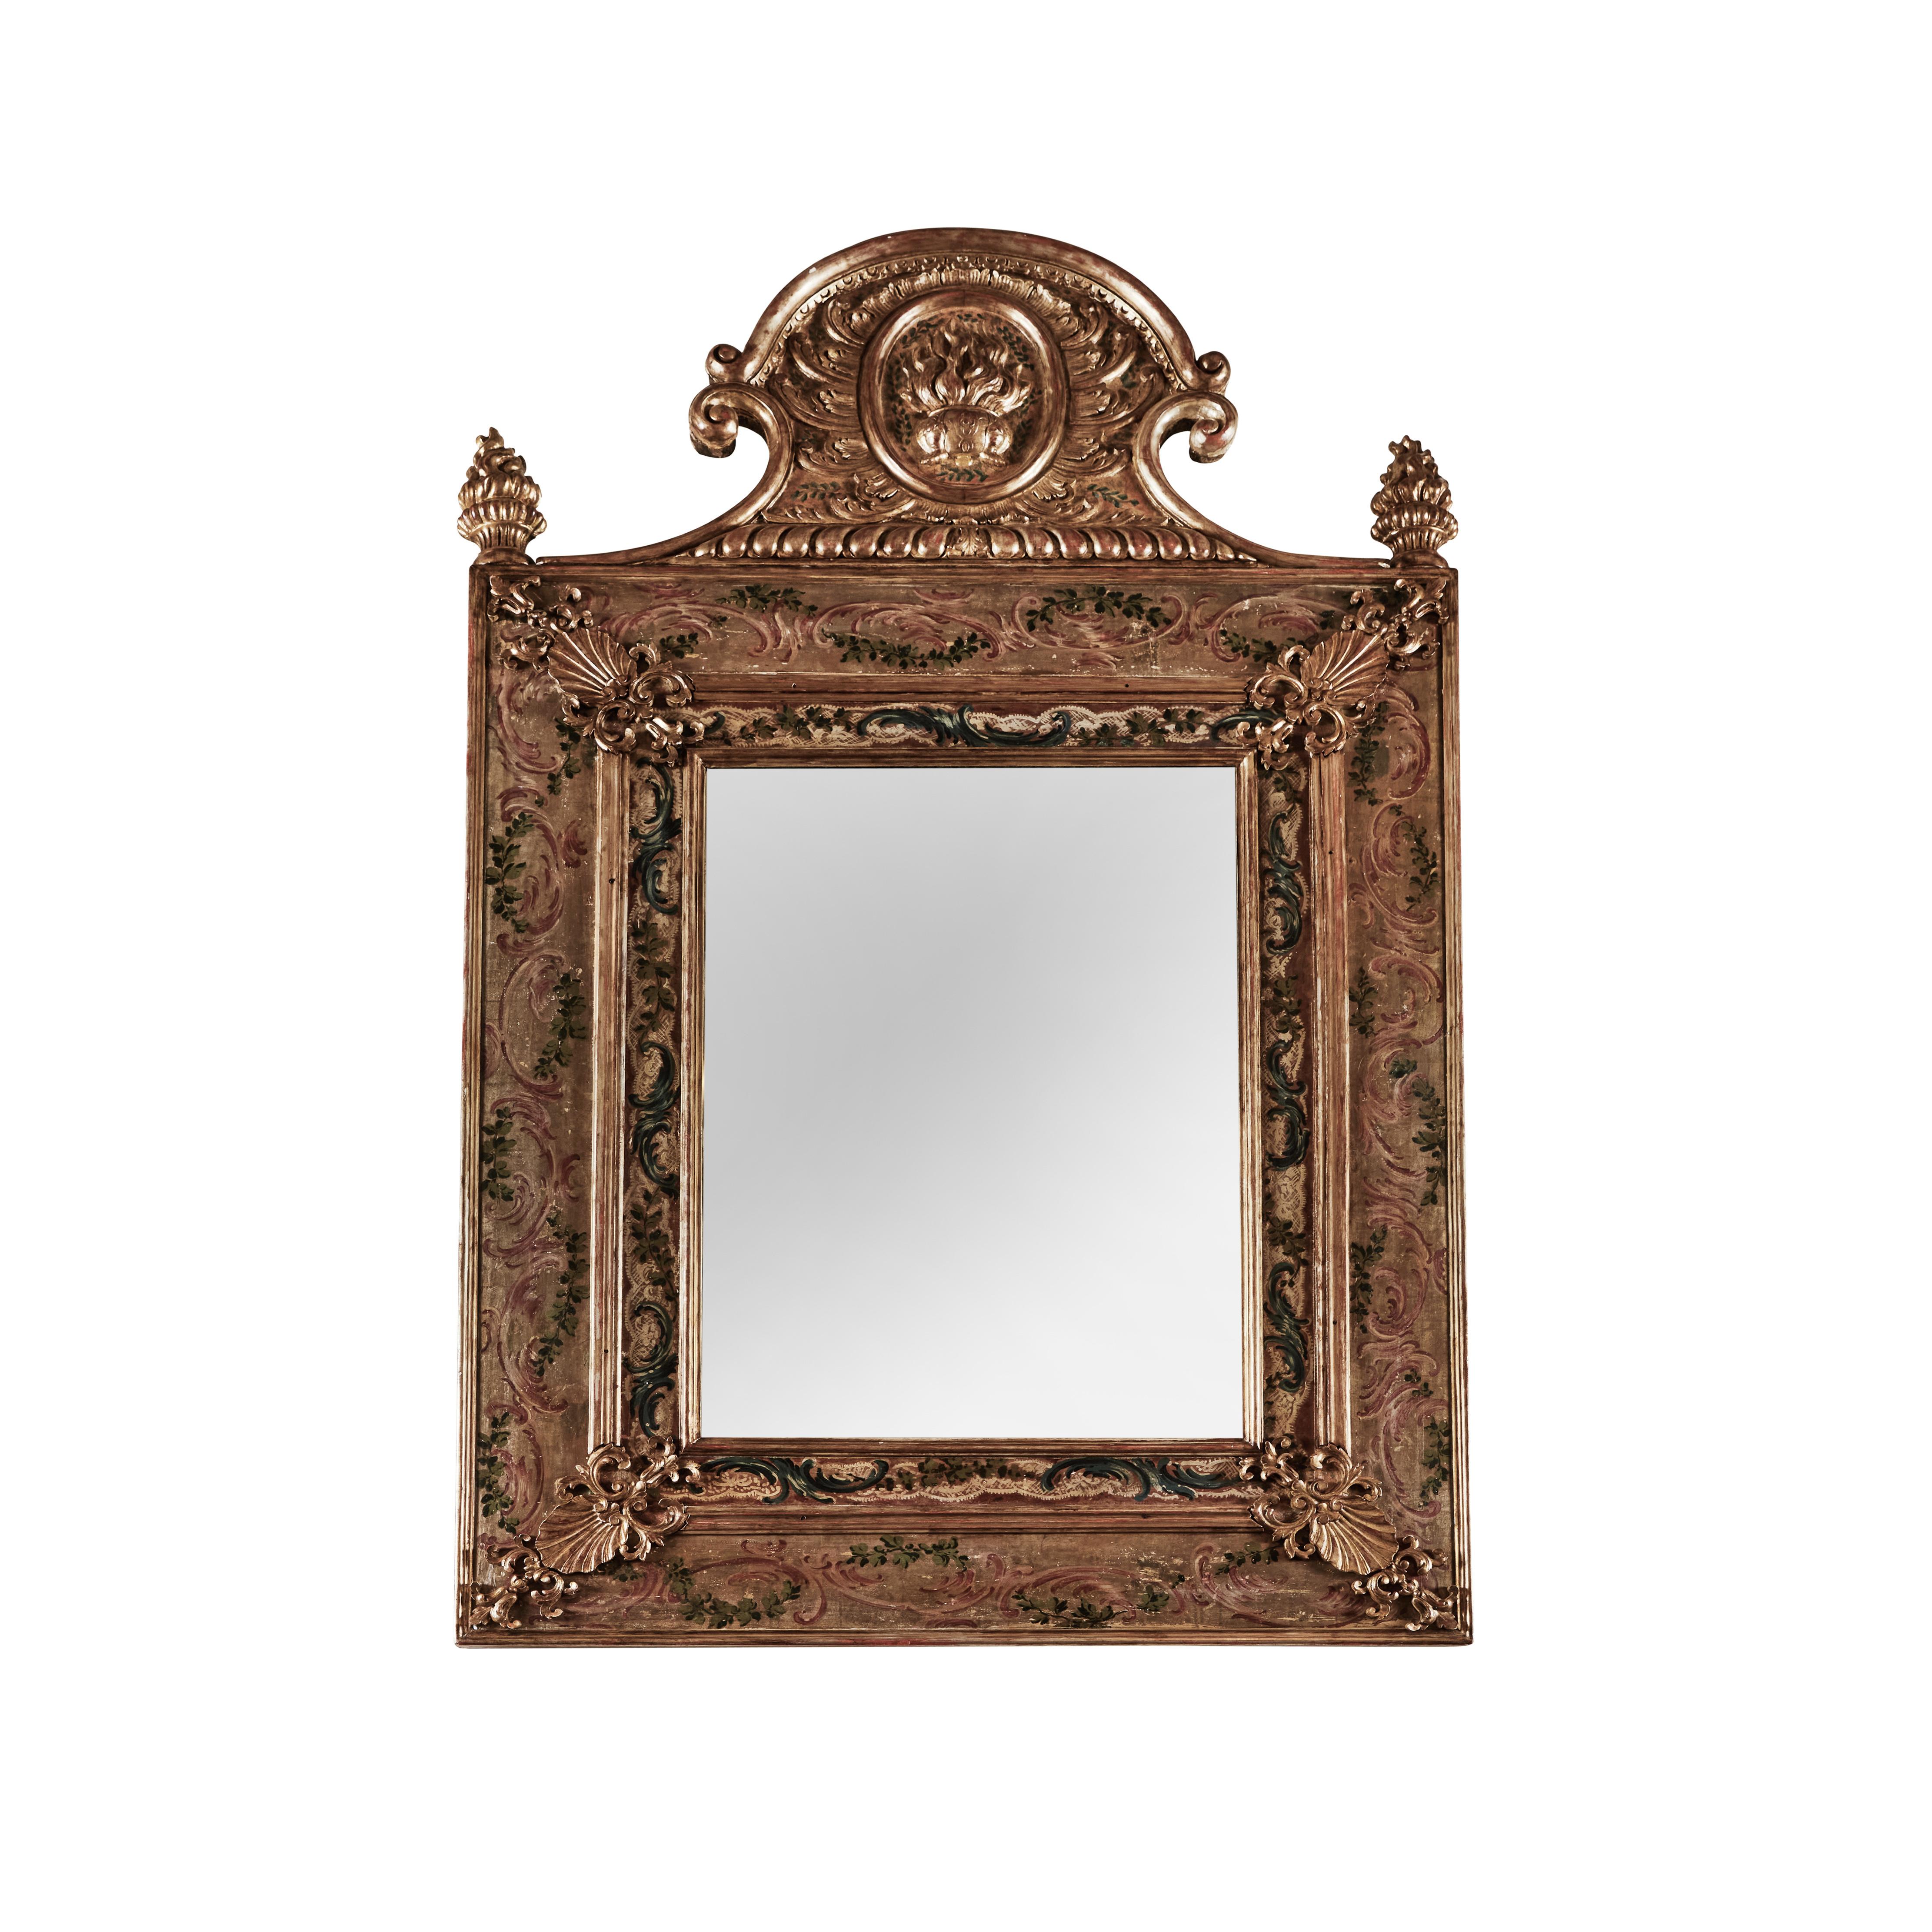 Ensemble de 4 miroirs néoclassiques polychromes et dorés représentant les quatre saisons. Le verre du miroir d'origine présente une perte de tressage et des taches dues à l'âge. 

VENDUS SÉPARÉMENT.  Le poids indiqué est celui de chaque pièce.